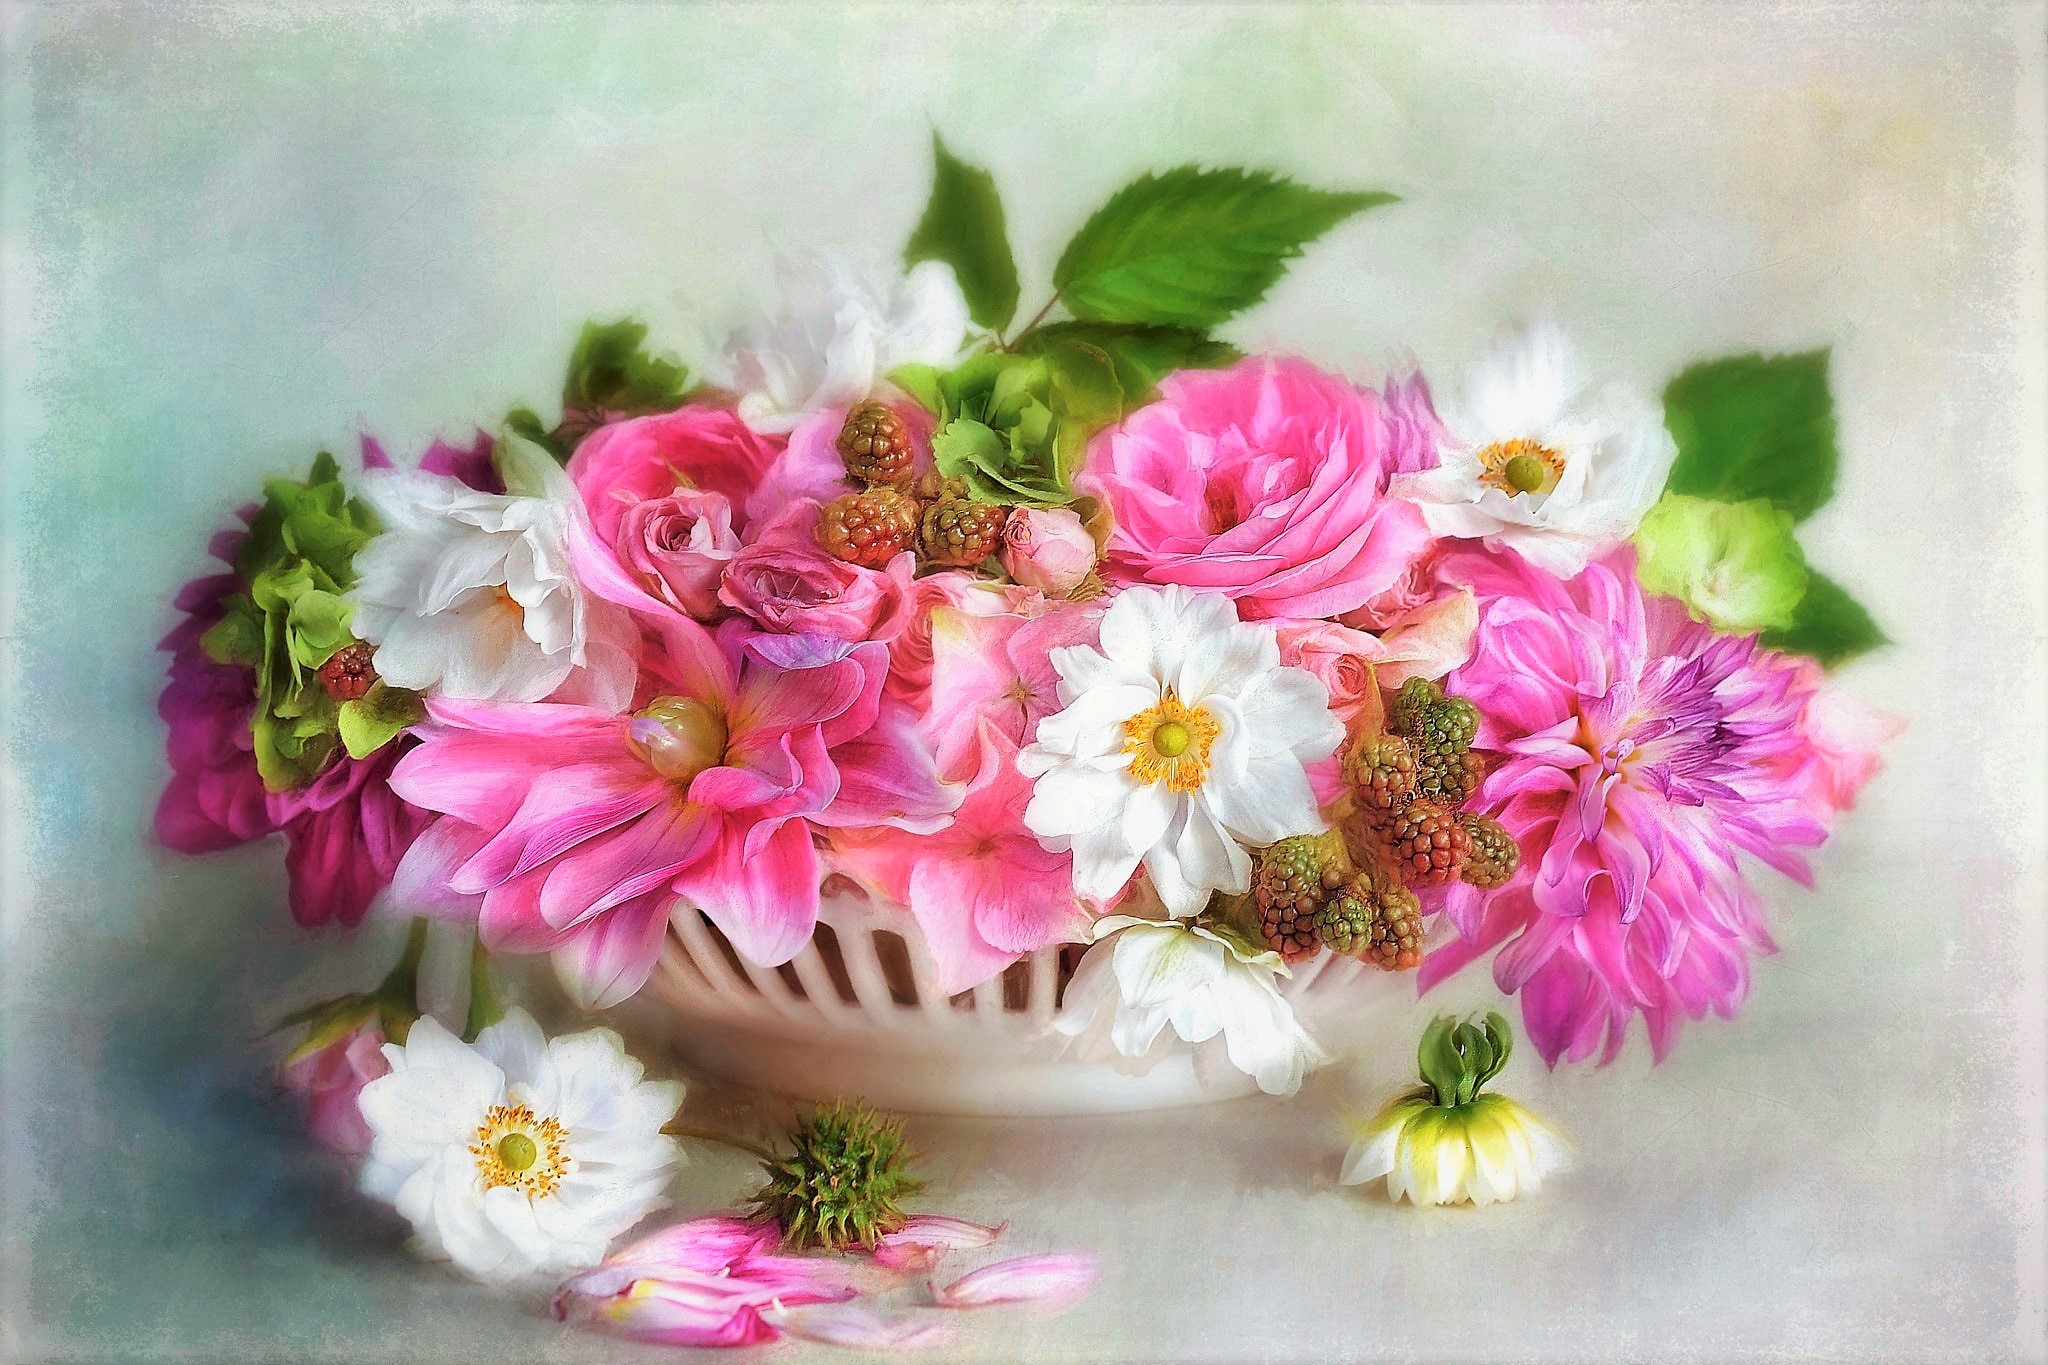 white flower, artistic, painting, bowl, flower, pink flower, still life